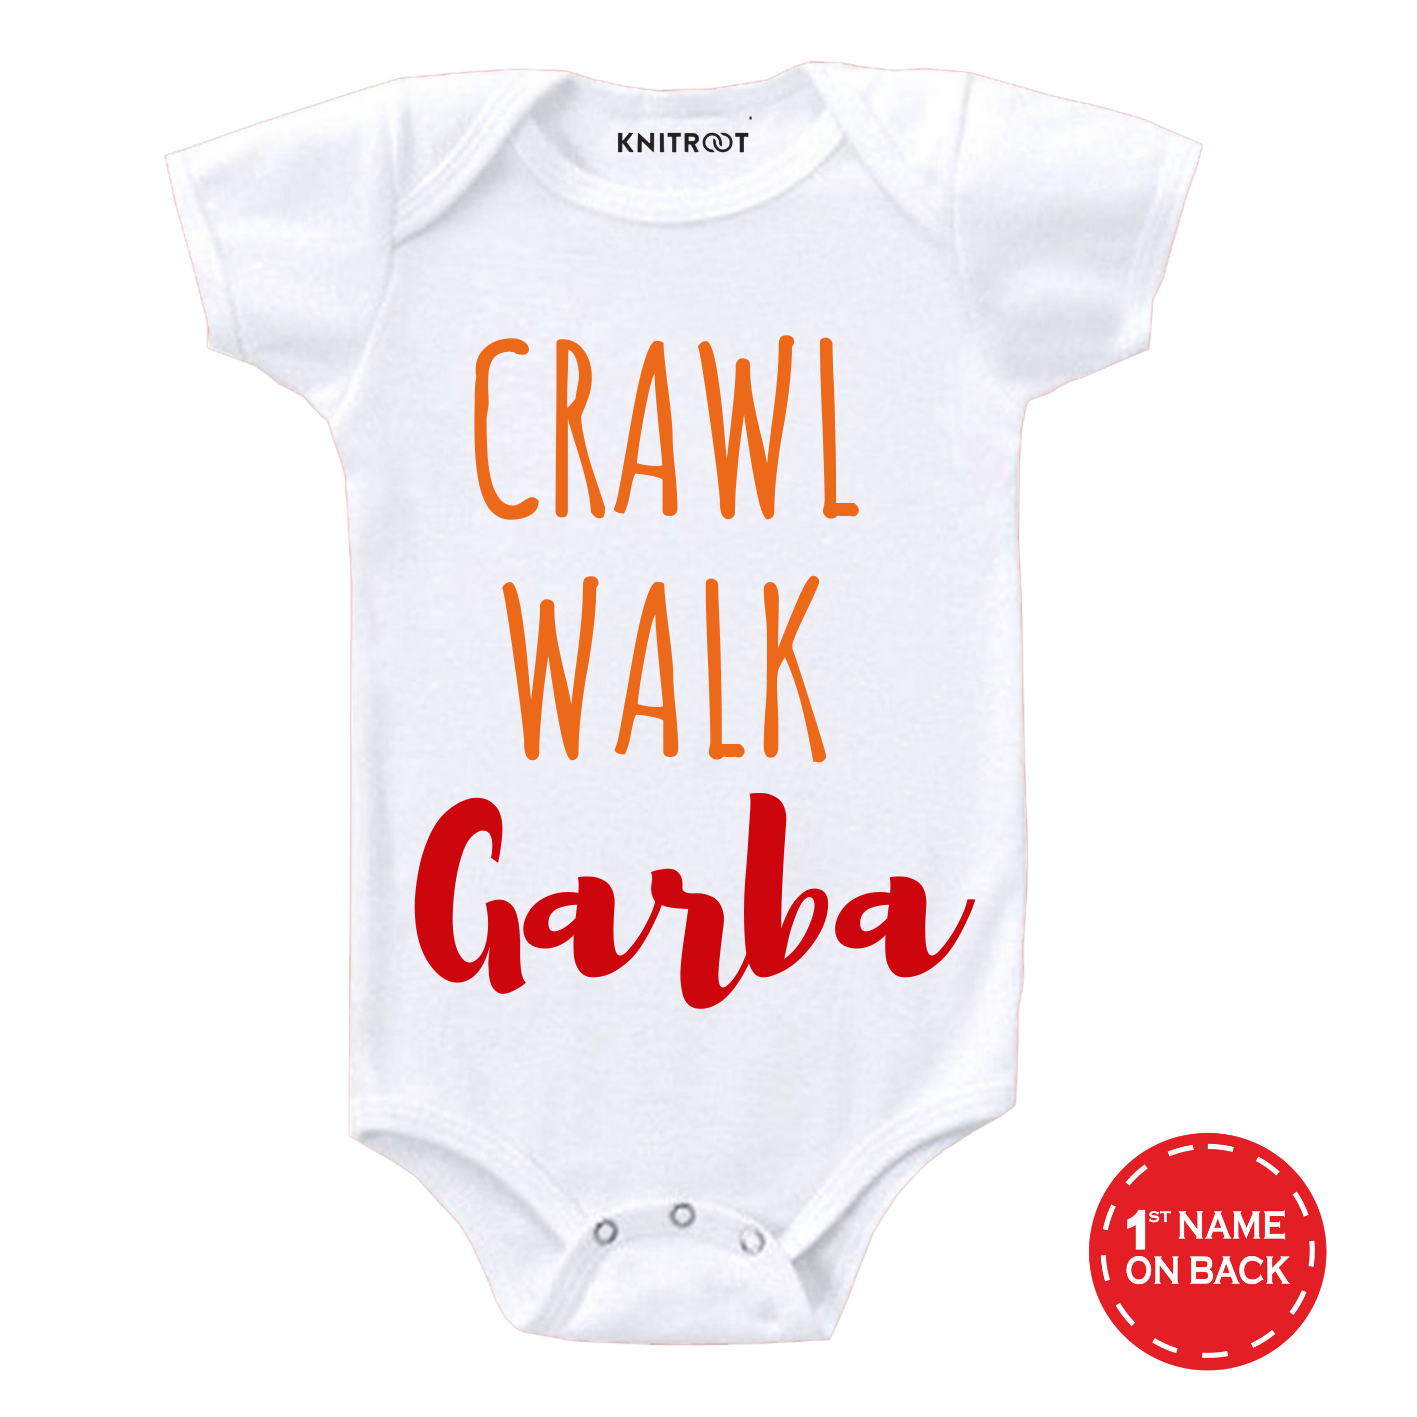 Crawl Walk Garba